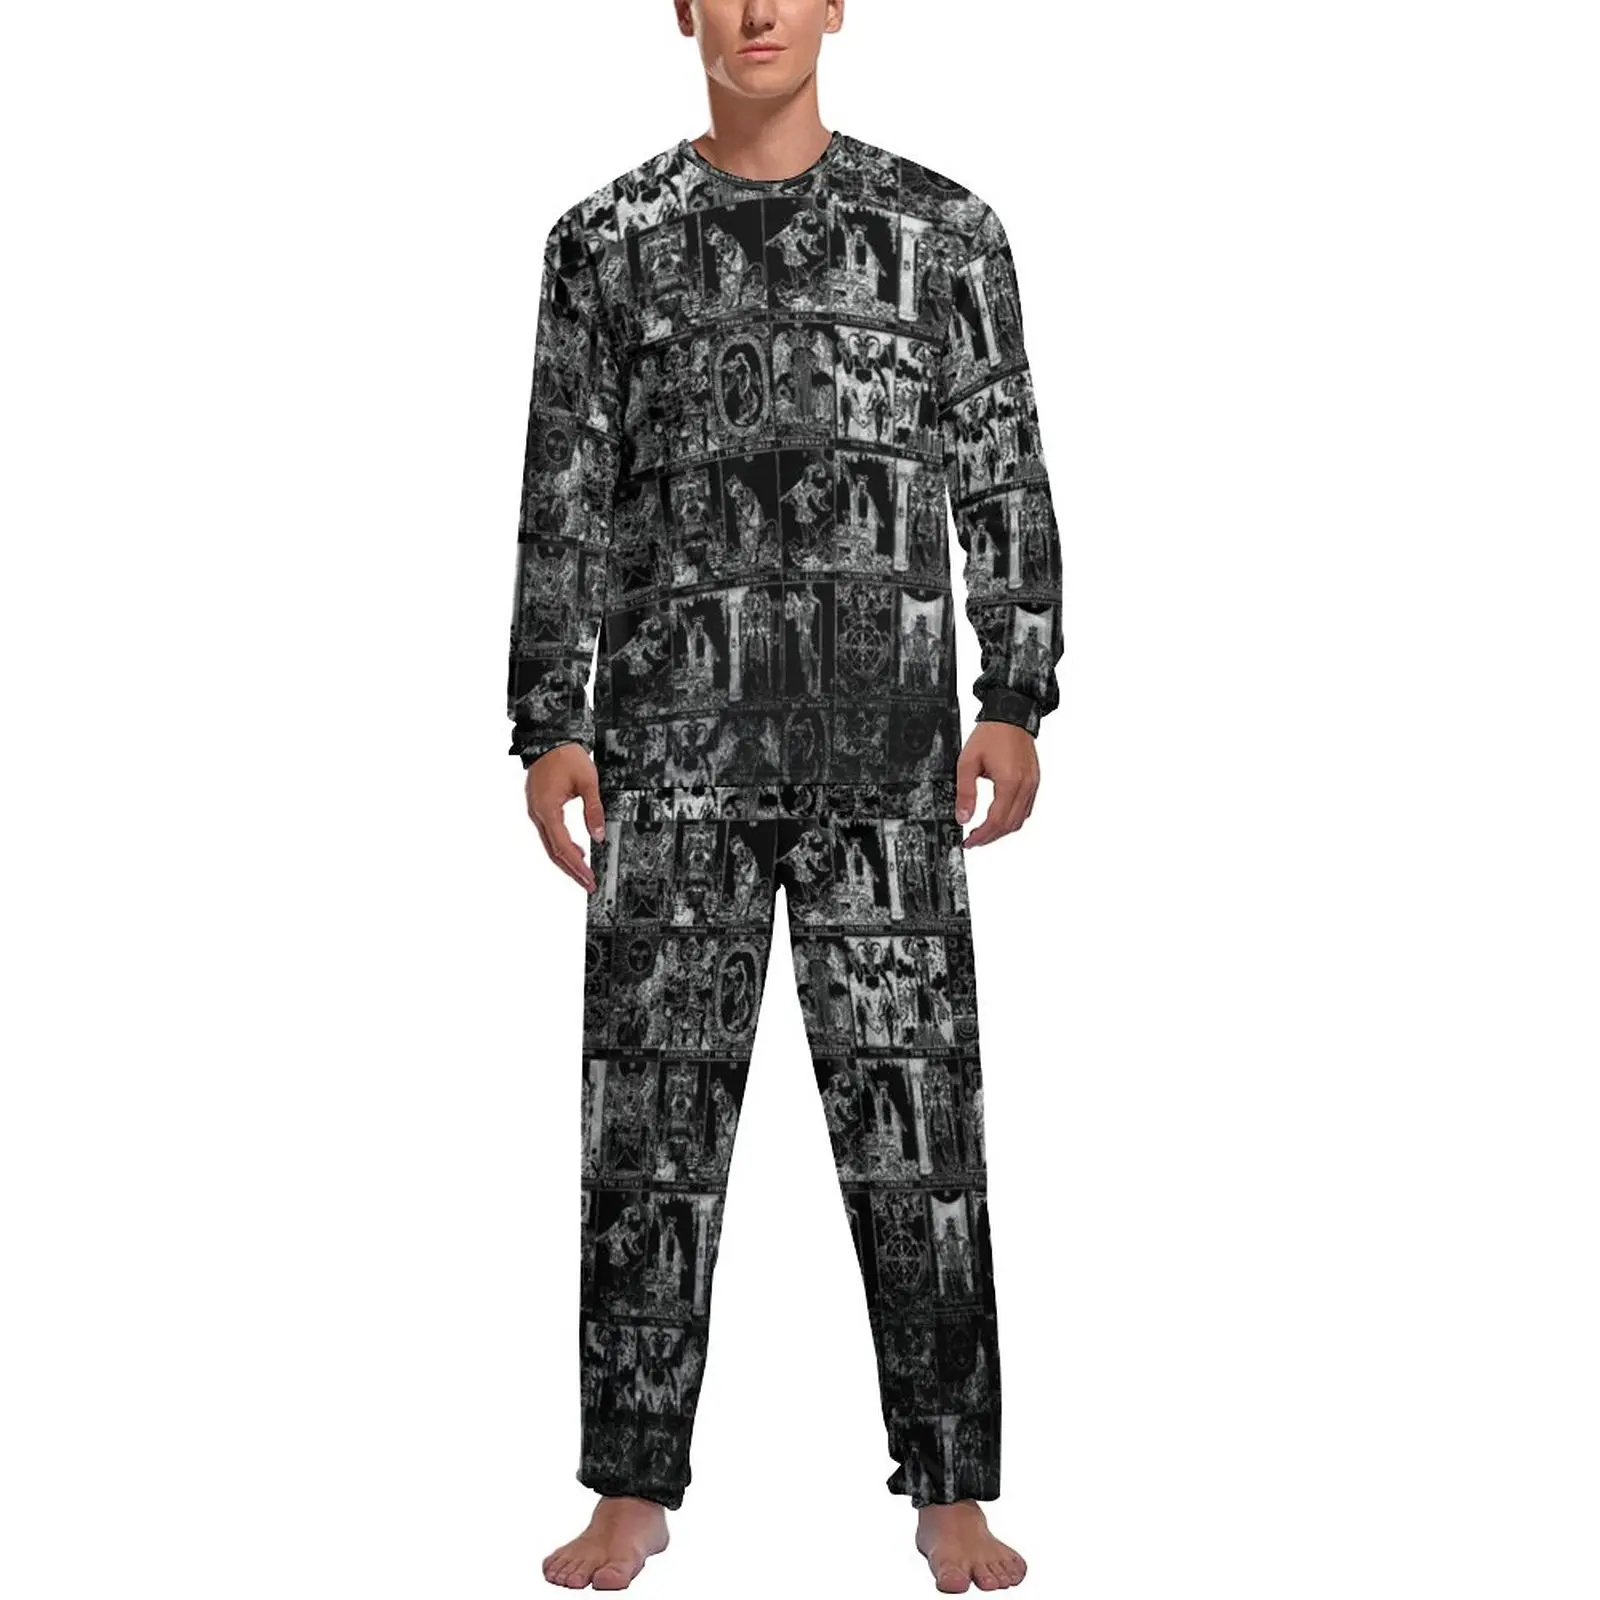 Major Arcana Tarot Pajamas Man Silver and Black Fashion Nightwear Winter Long Sleeve Two Piece Leisure Pattern Pajama Sets